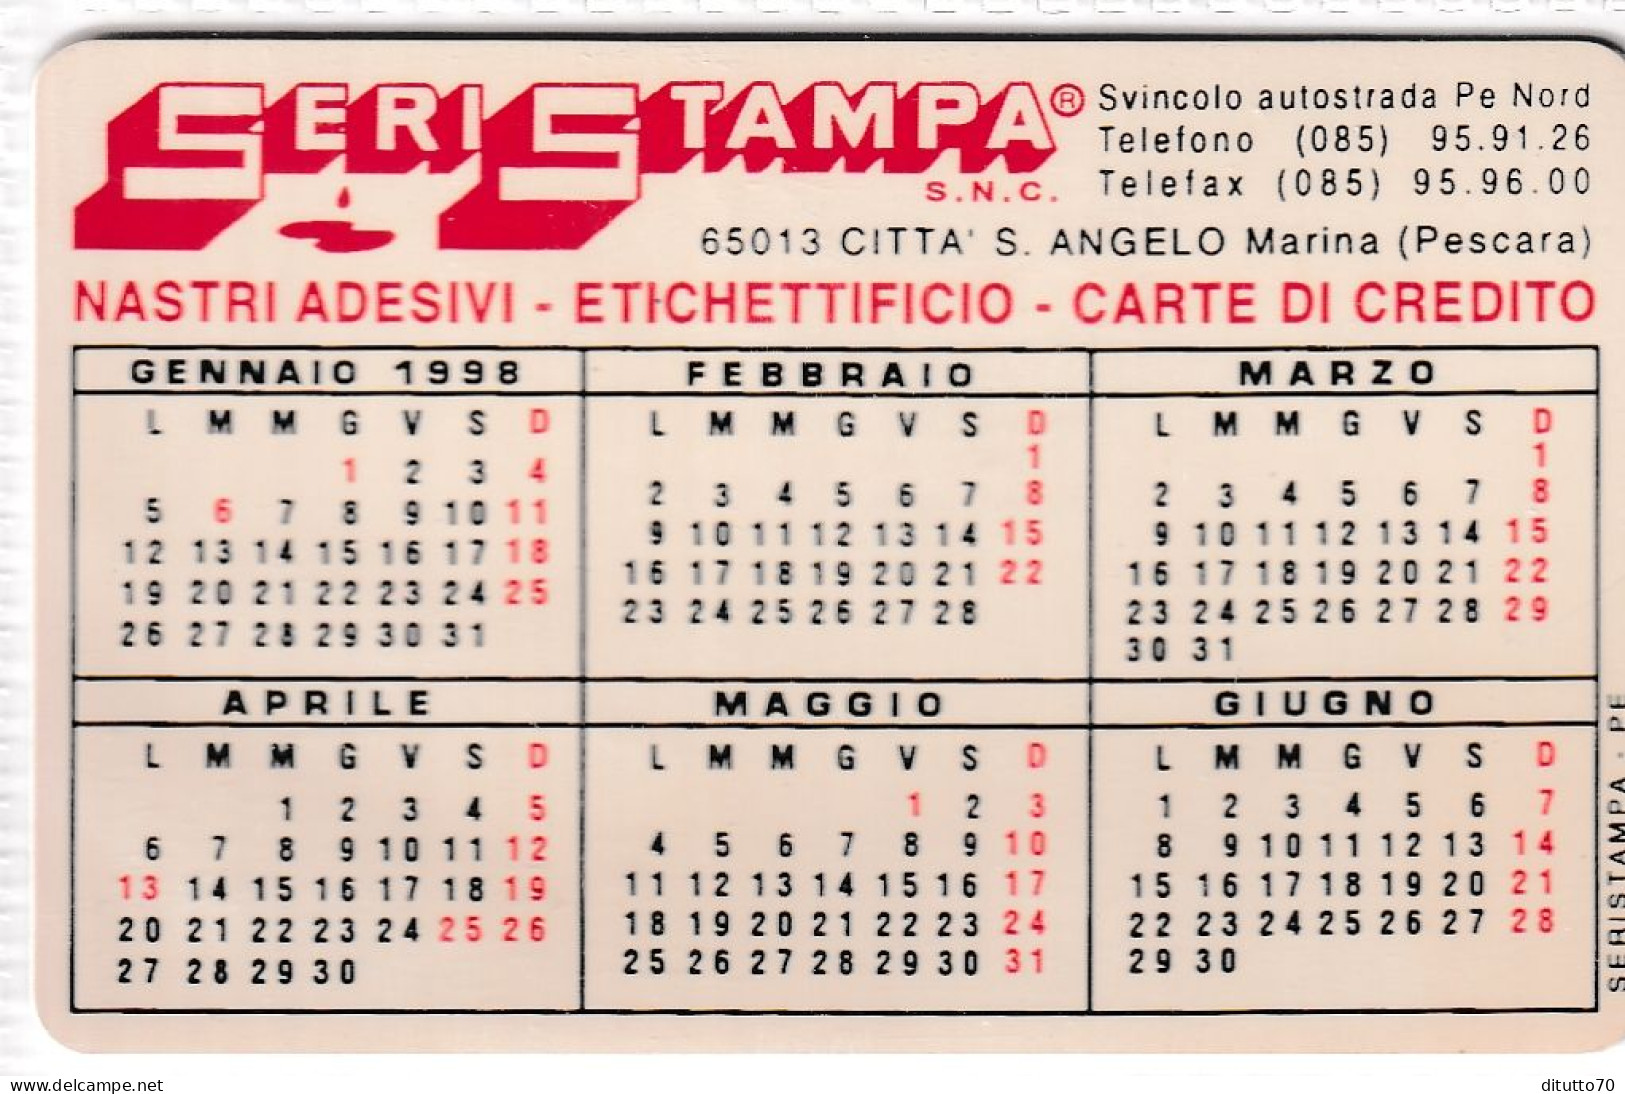 Calendarietto - Seri Stampa - Citta S.angelo Maria - Pescara - Anno 1998 - Small : 1991-00